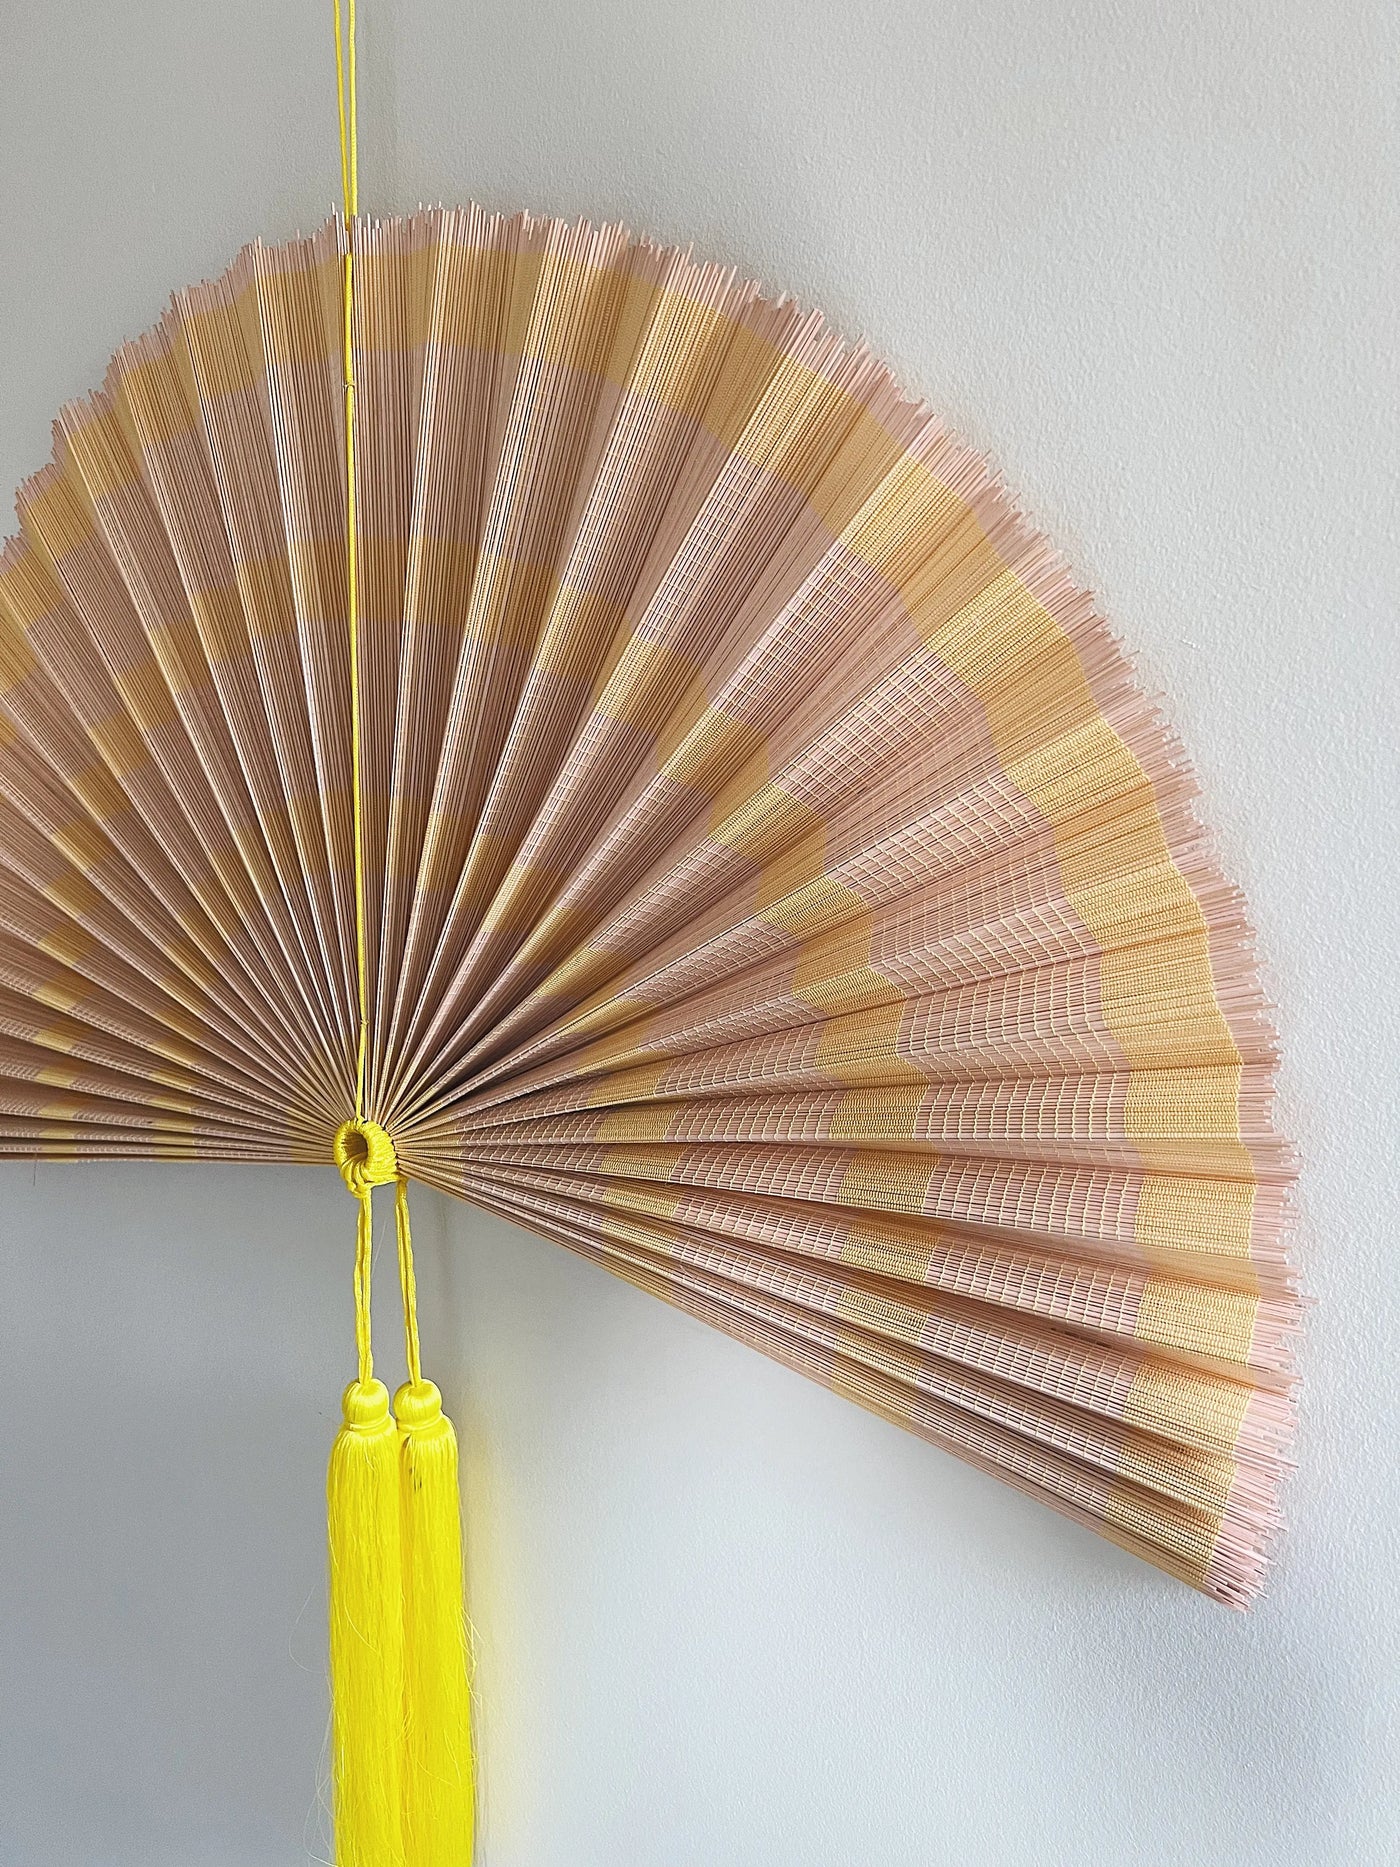 Håndlavet bambusvifte fra Vietnam | Lyserød og gul - 2 størrelser Studio Hafnia